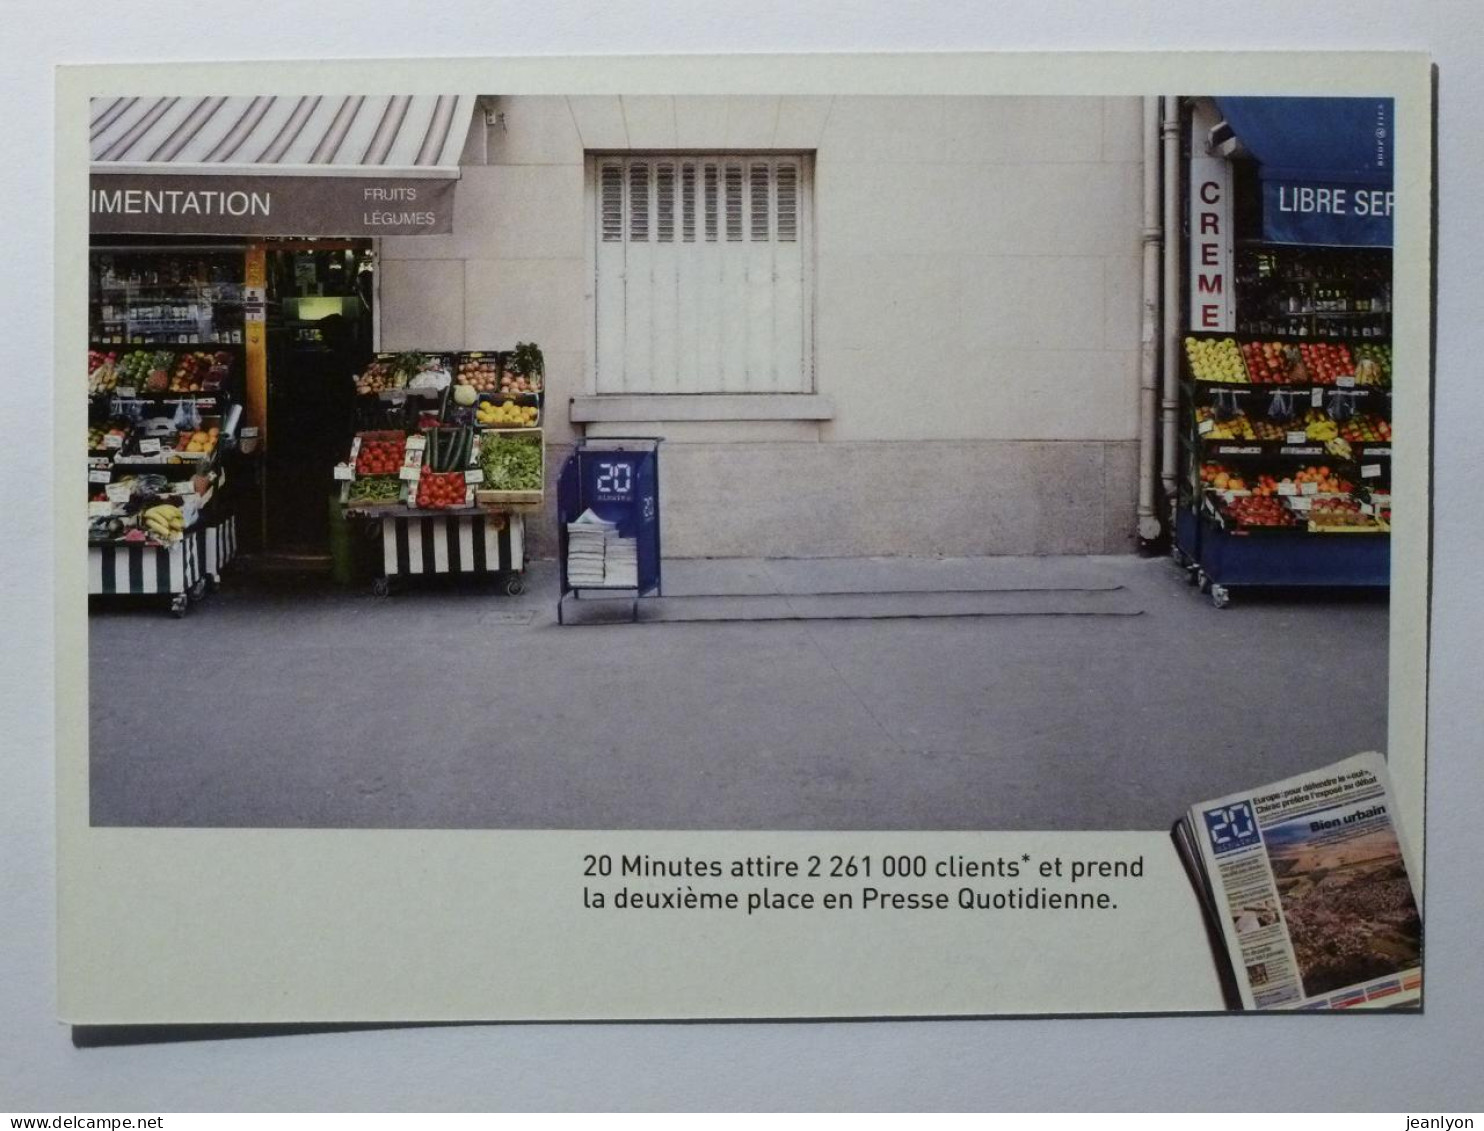 COMMERCE - Marchand FRUITS & LEGUMES à Coté Présentoire Journal 20 Minutes - Carte Publicitaire - Shopkeepers